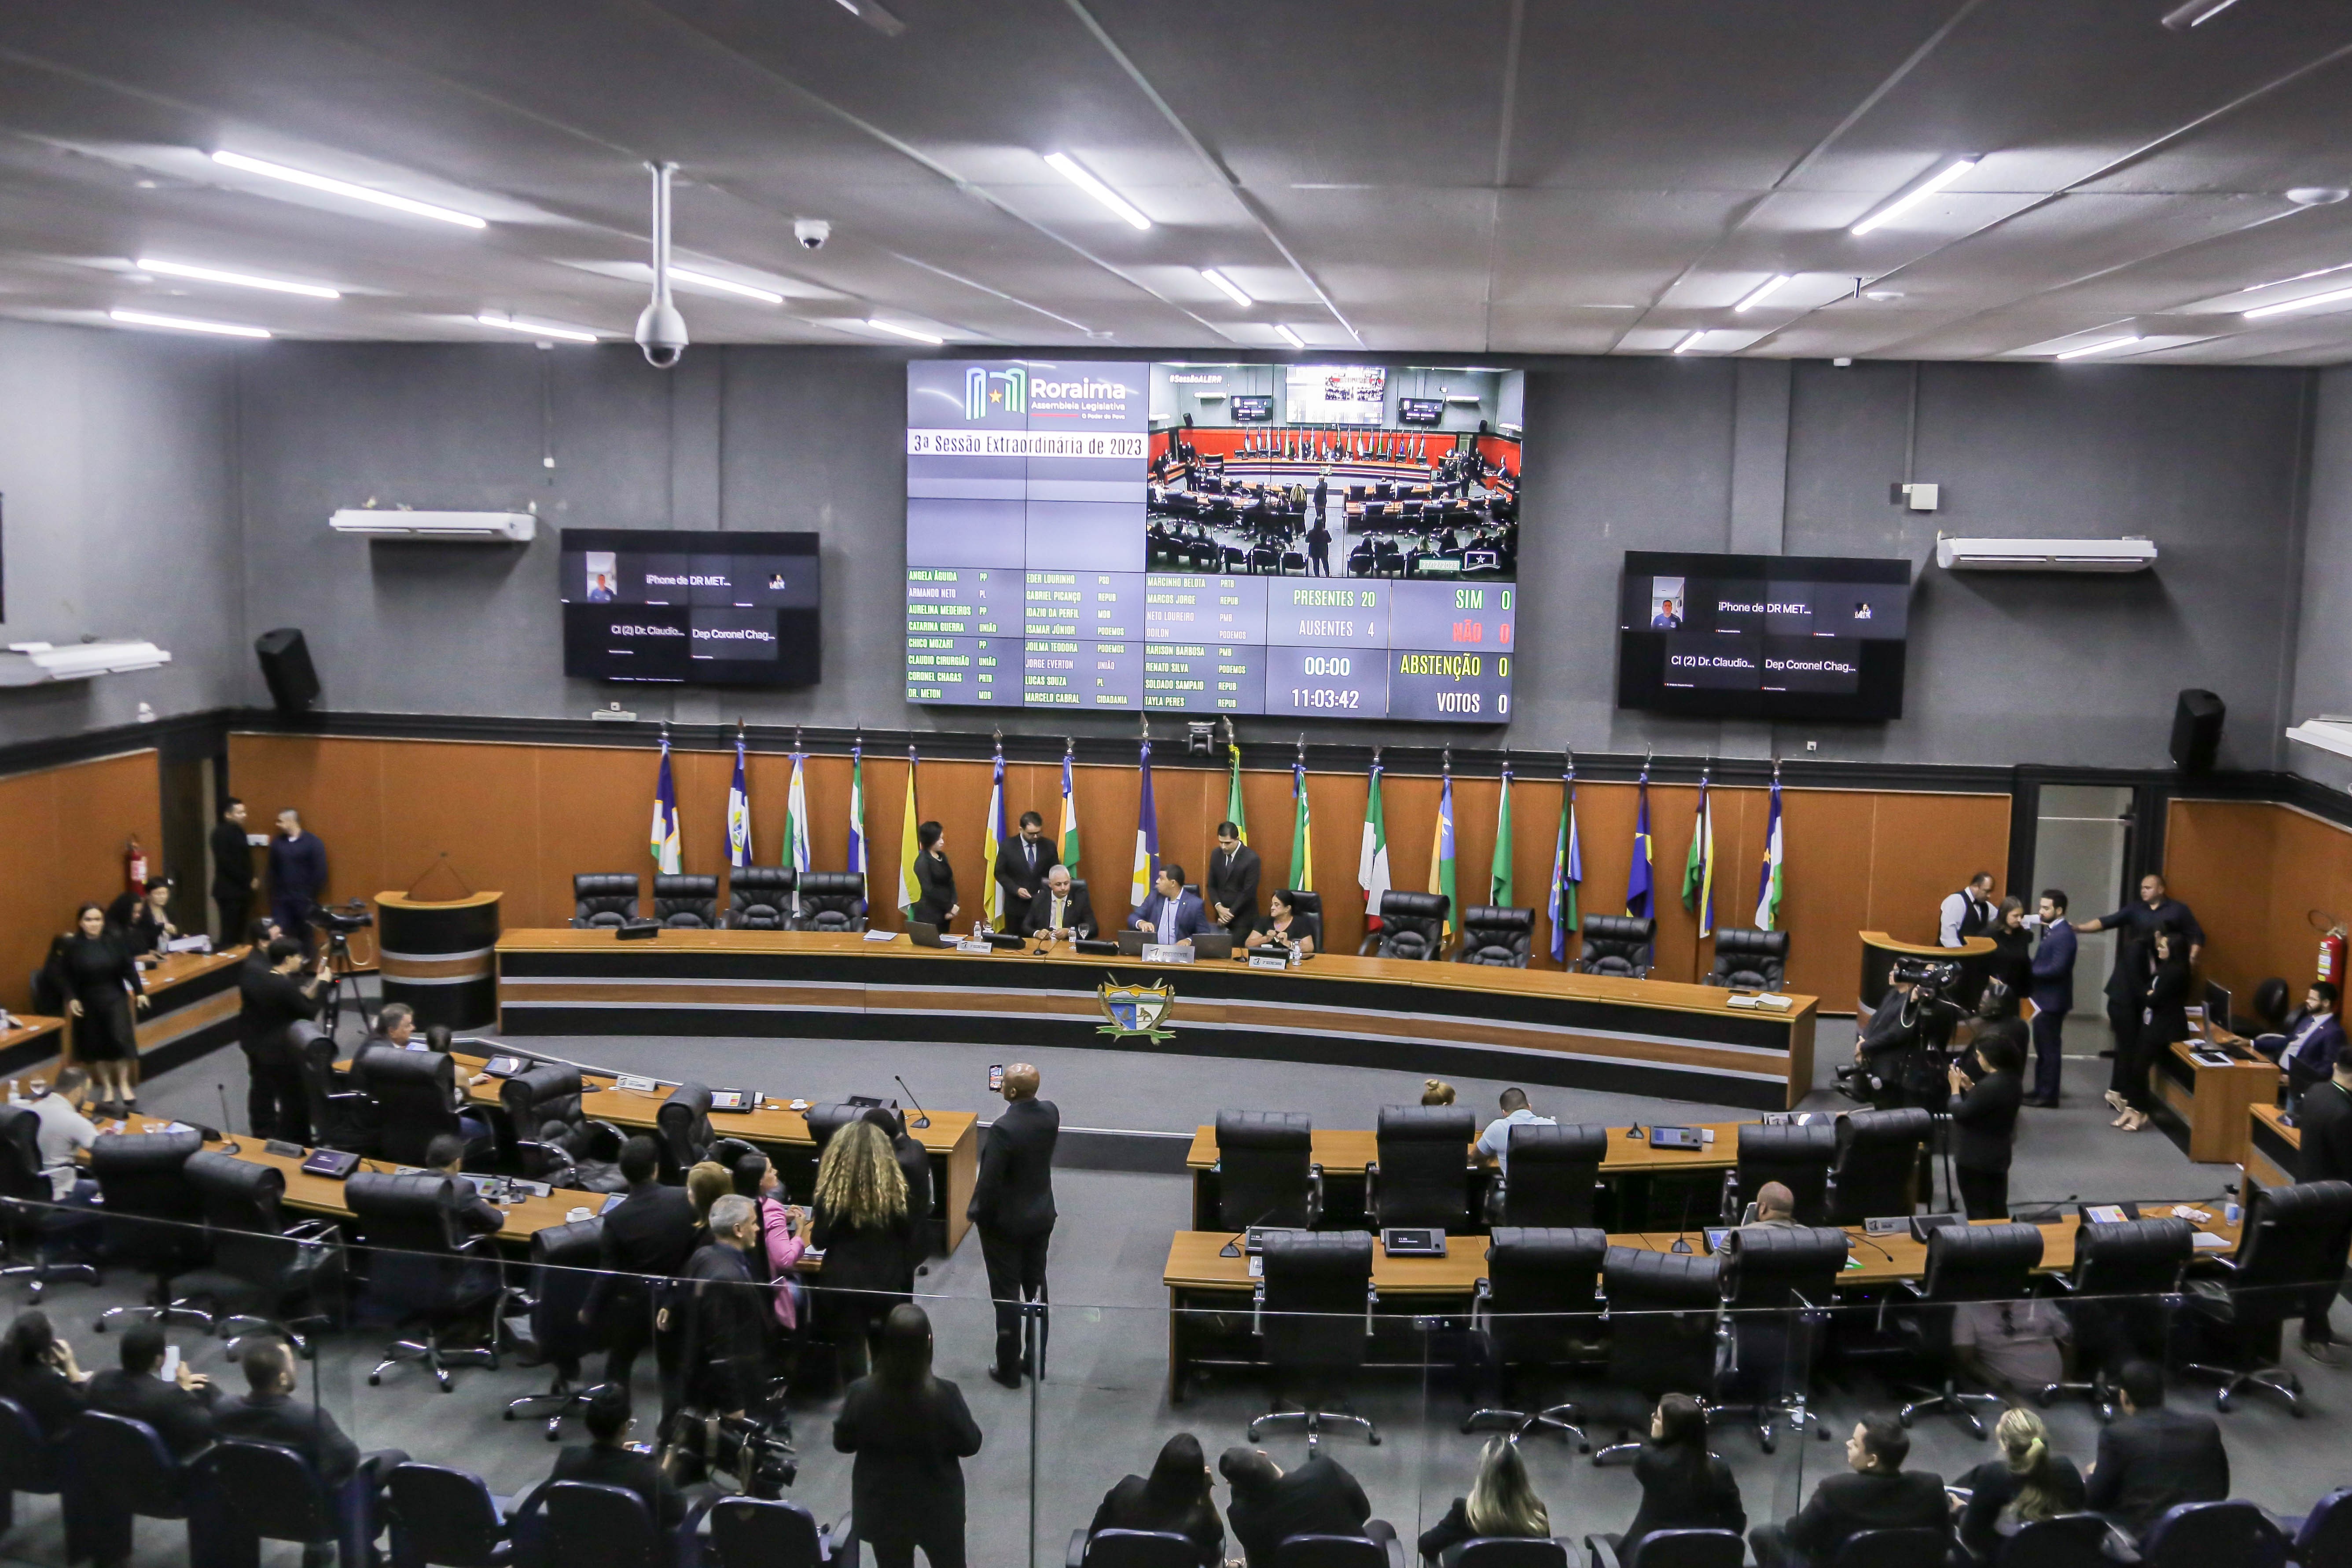 ANO LEGISLATIVO - Deputados voltam às sessões ordinárias na Assembleia Legislativa no dia 20 de fevereiro